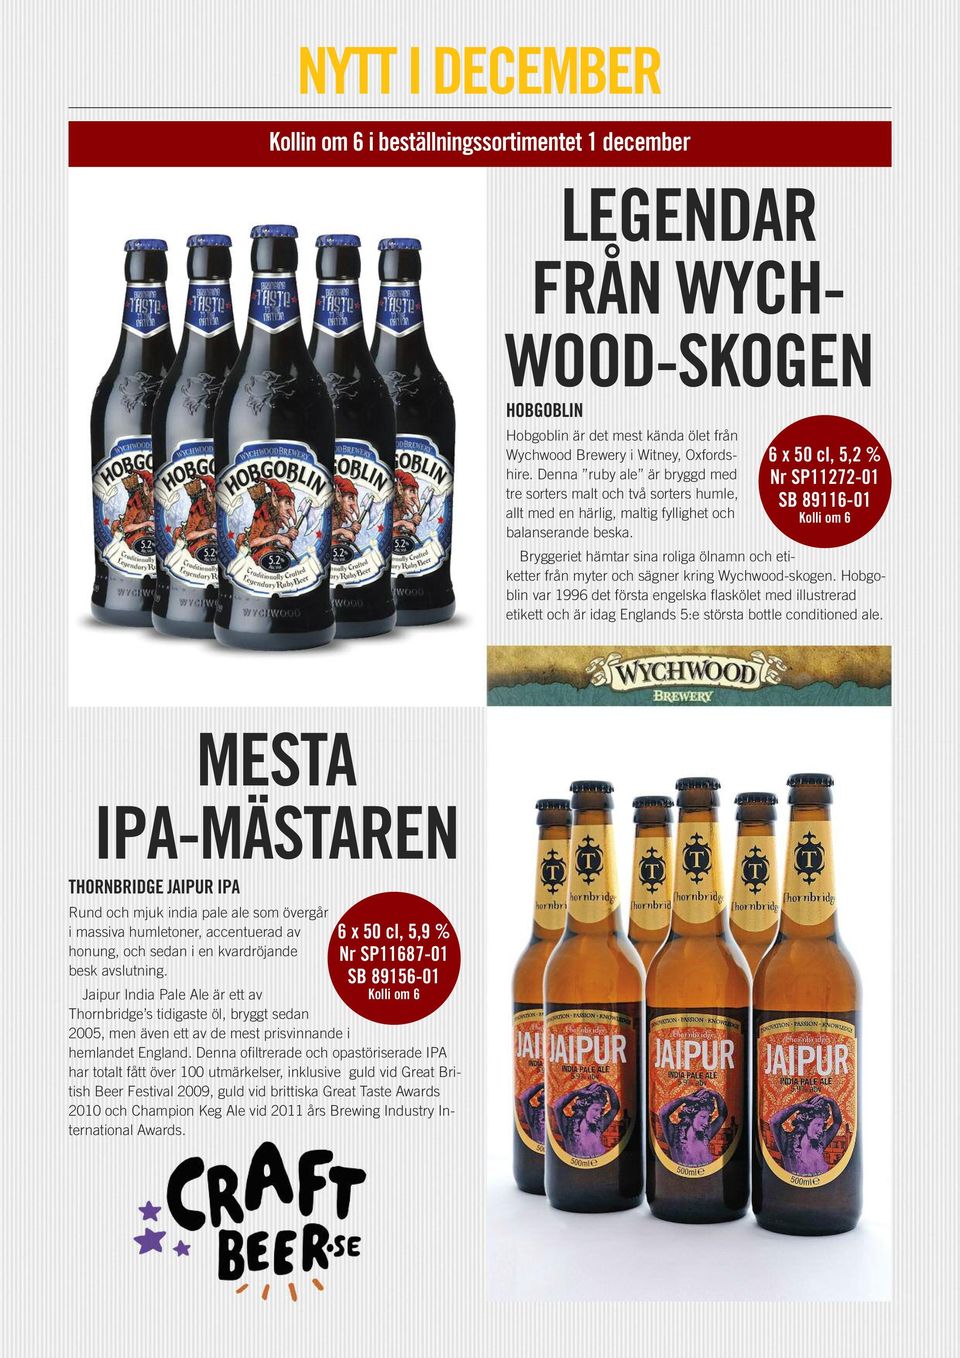 6 x 50 cl, 5,2 % Nr SP11272-01 SB 89116-01 Bryggeriet hämtar sina roliga ölnamn och etiketter från myter och sägner kring Wychwood-skogen.